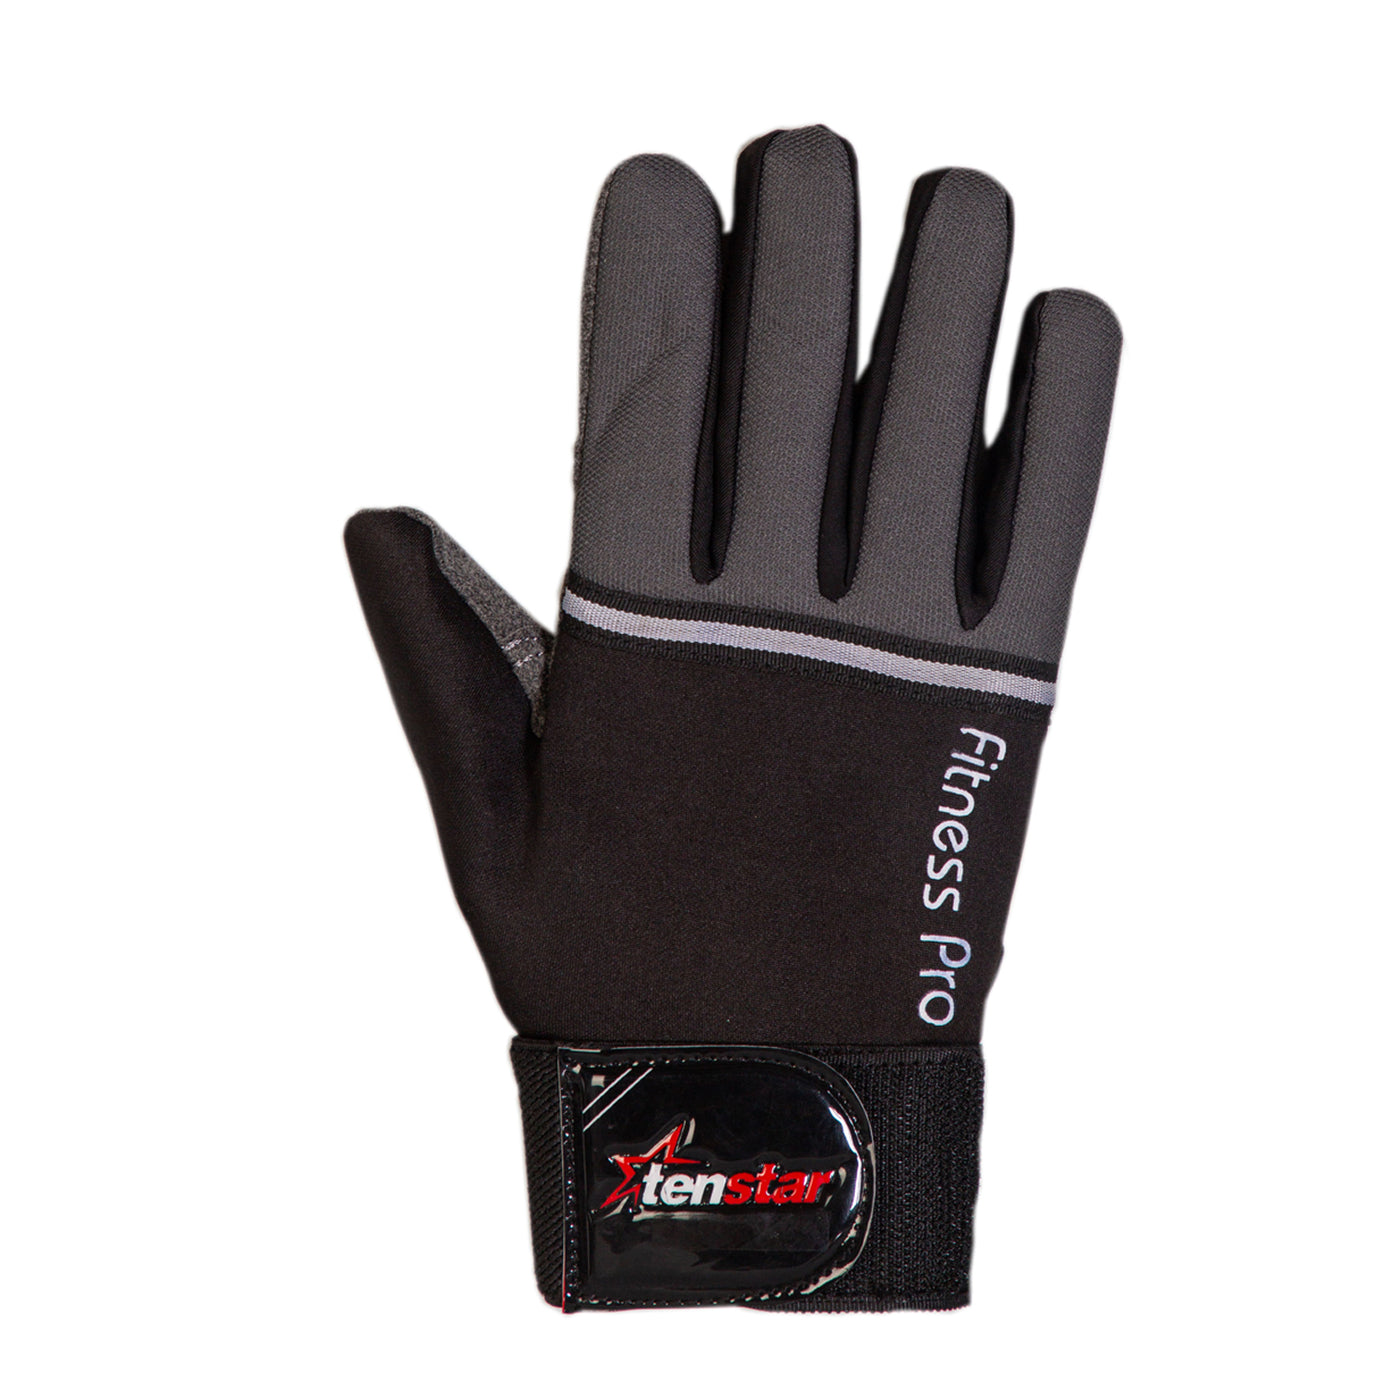 Tenstar Tenstar Multipurpose Gym and Riding Full Finger Gloves for Men - Black freeshipping - athletive Gym Gloves - Men athletive